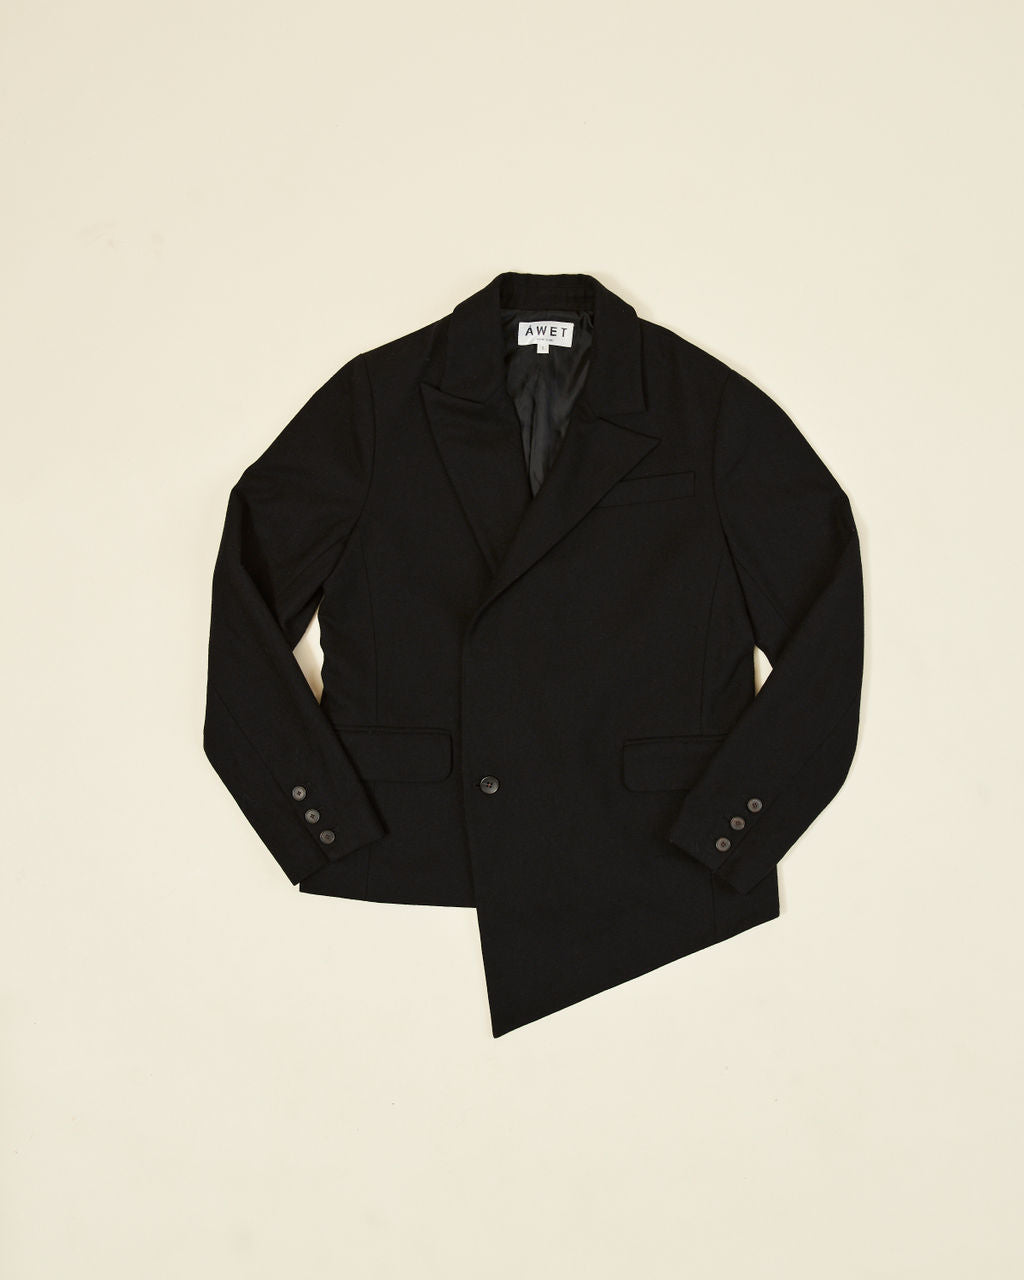 Roman Suit Jacket Black